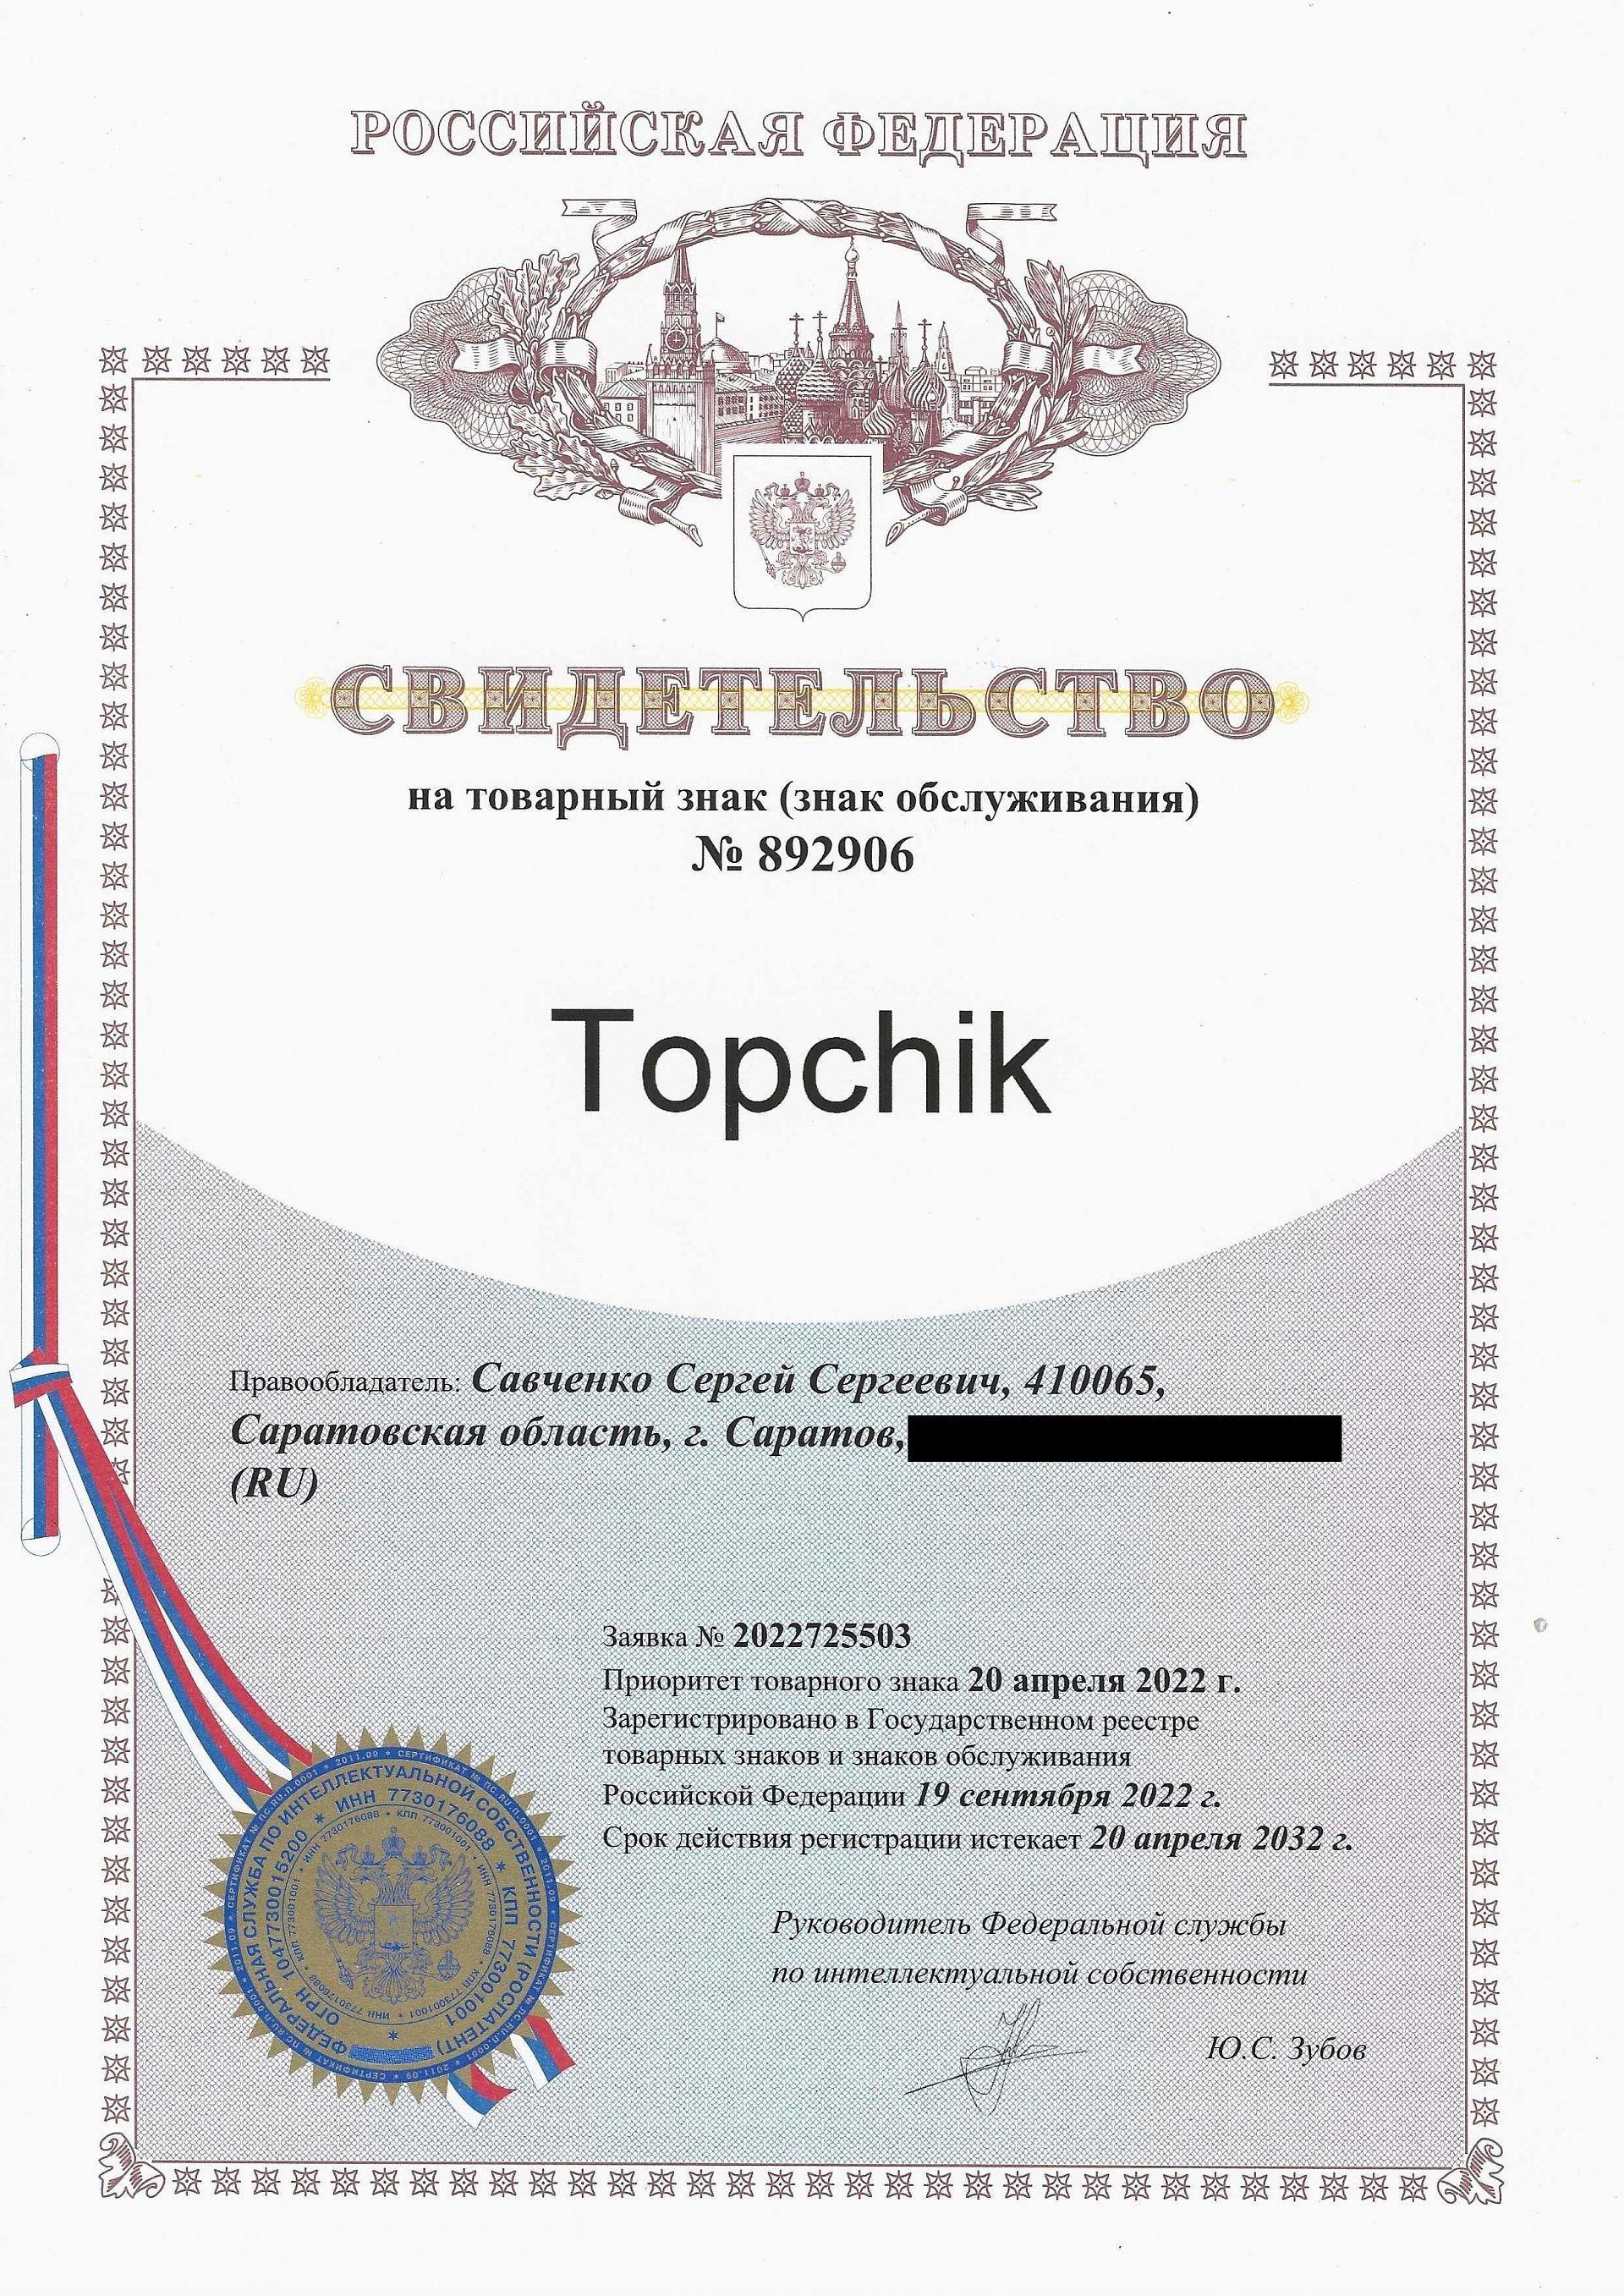 Товарный знак № 892906 – Topchik